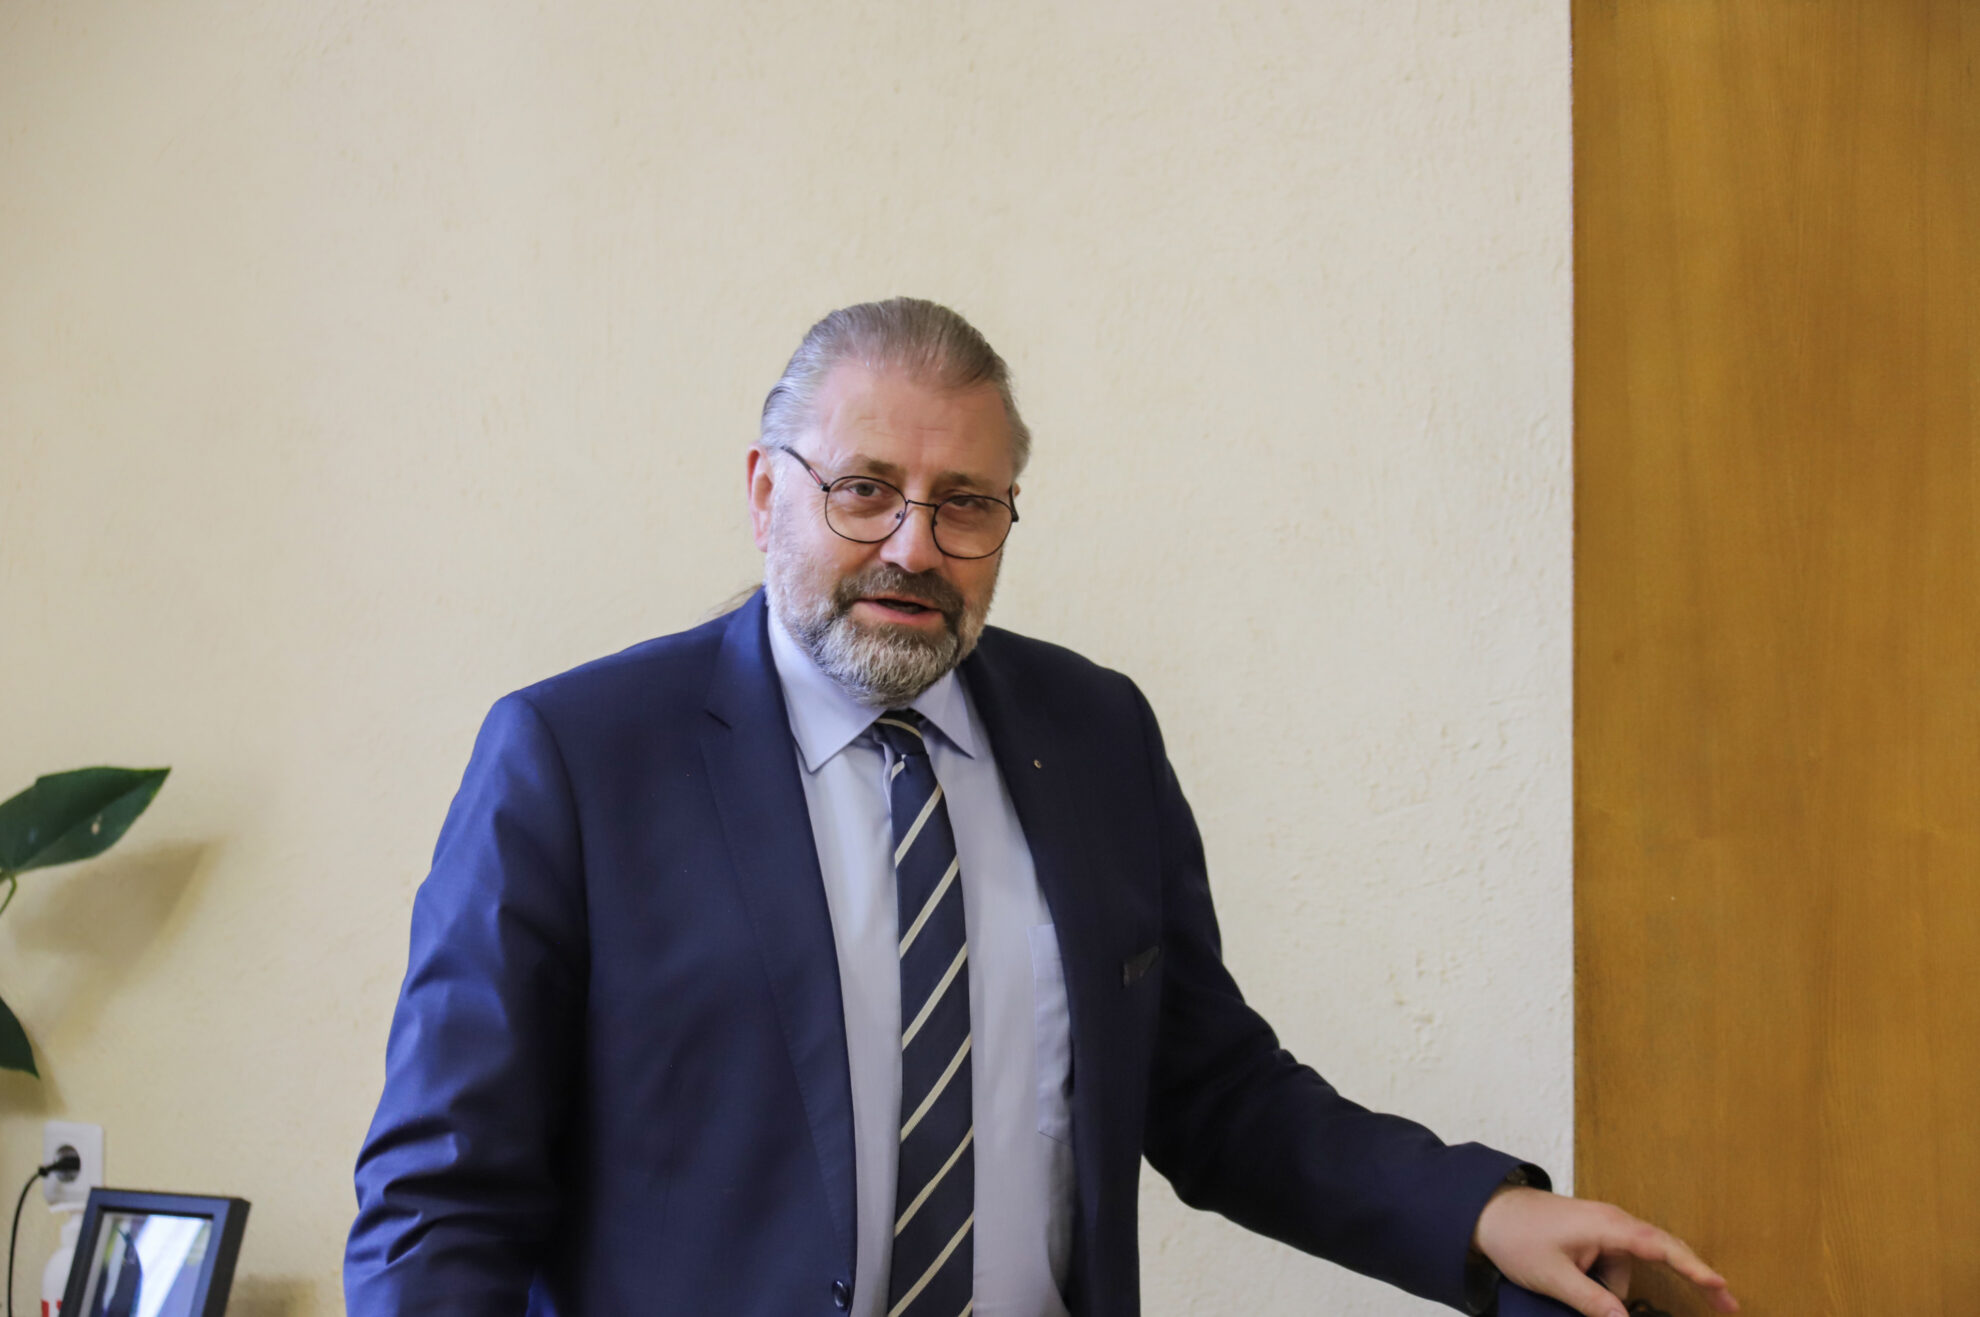 Panevėžio miesto meras Rytis Račkauskas penktadienį vienbalsiai išrinktas Regiono plėtros tarybos kolegijos pirmininku. Juo pavaduotoju tapo Pasvalio rajono meras Gintautas Gegužinskas.